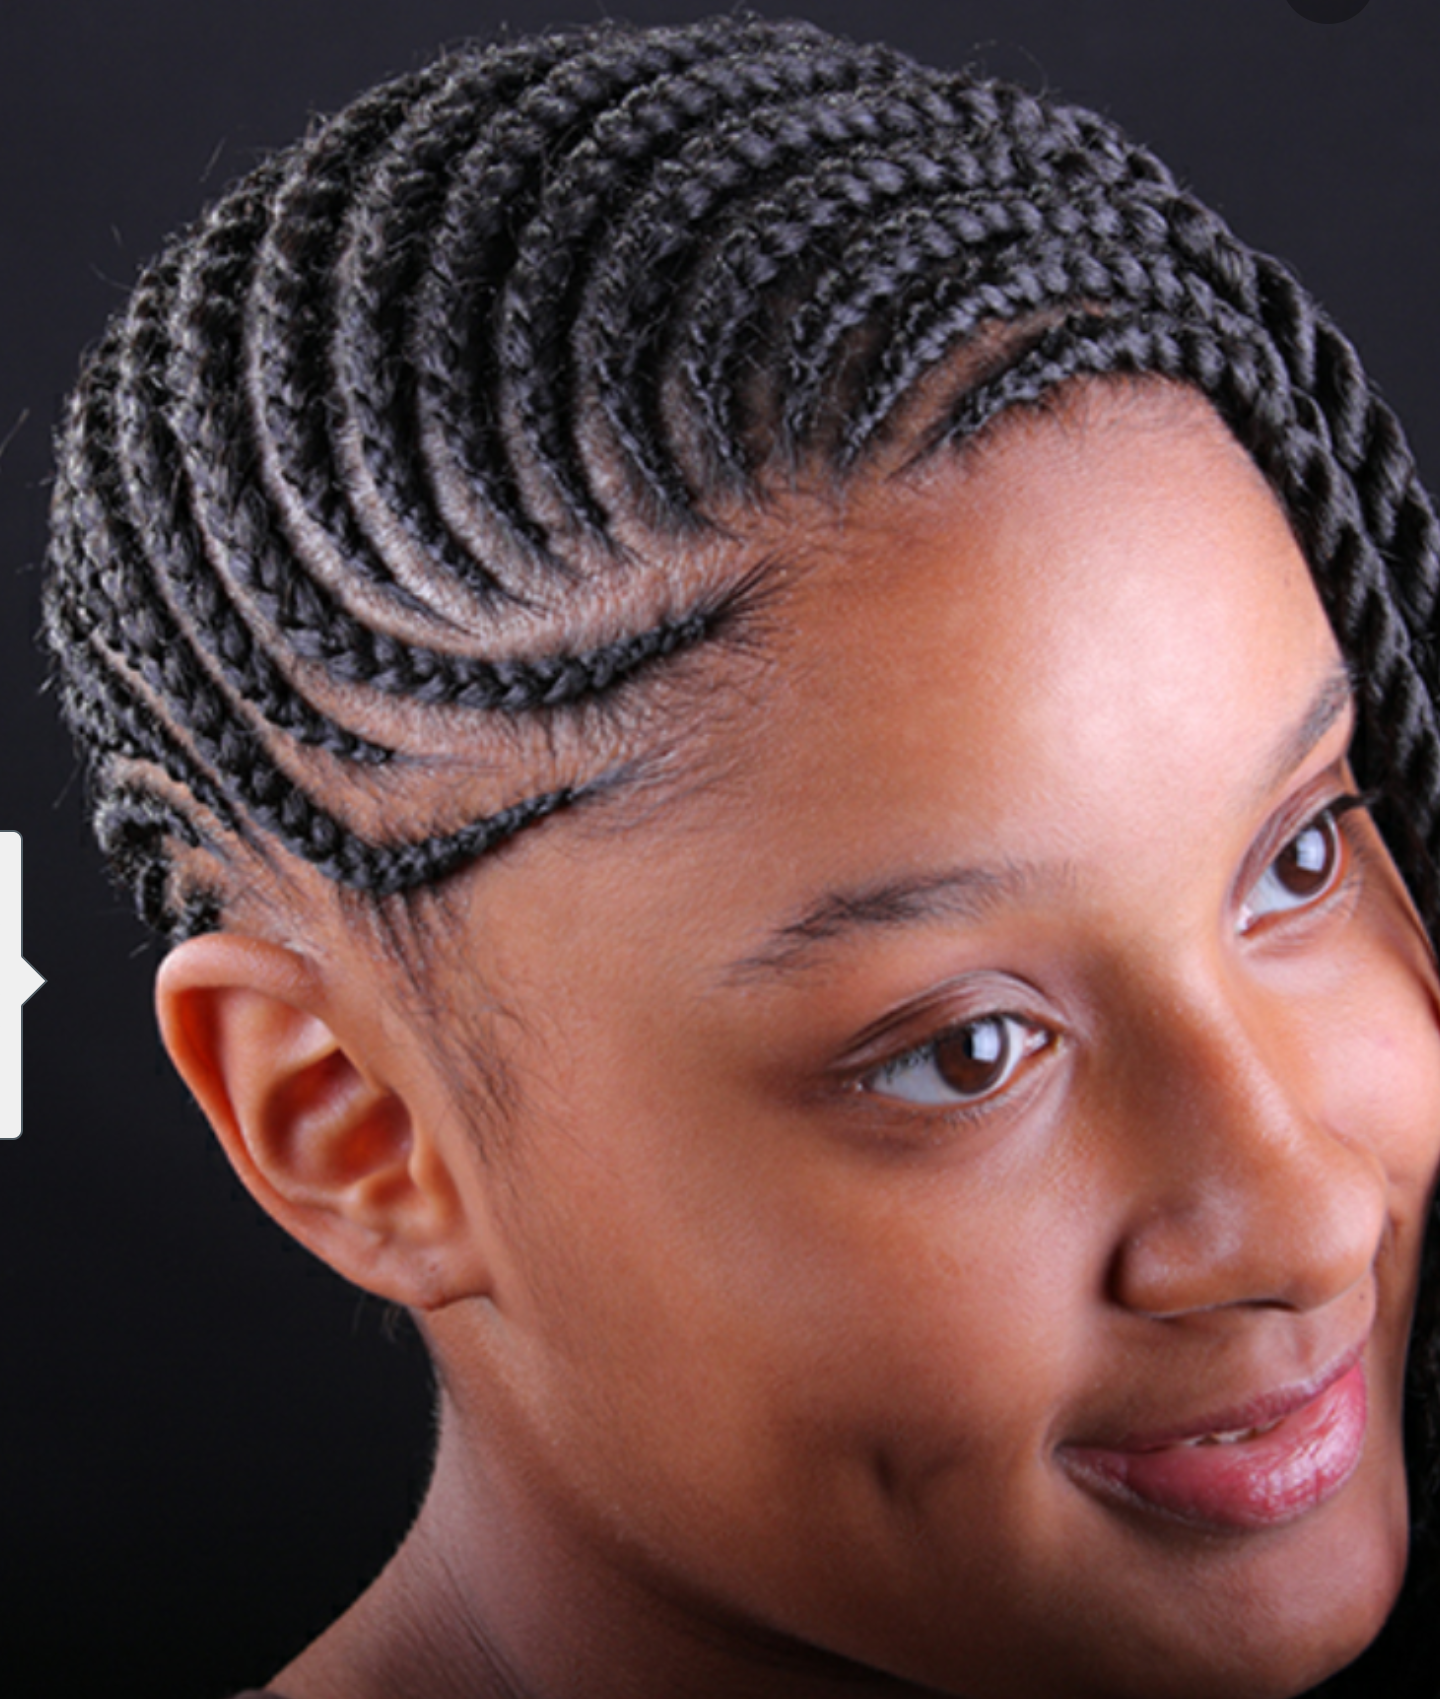 Asam African Hair Braiding Salon - Garland, TX 75041